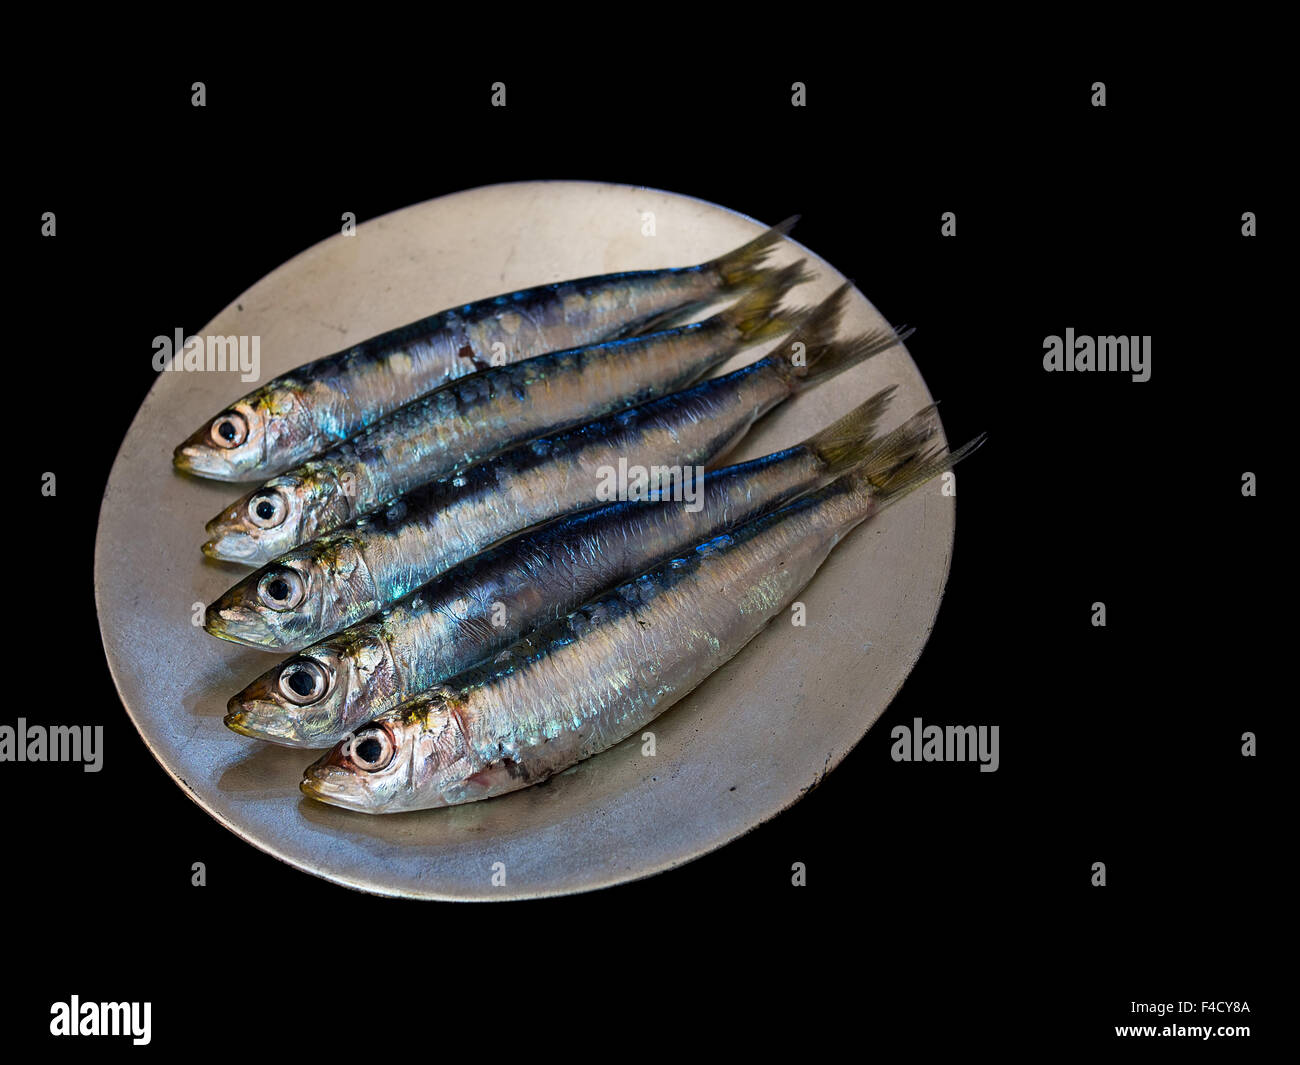 Gesunden Fetten Fisch aka Sardinen. Isoliert auf schwarz. Grelle Beleuchtung für Effekt. Stockfoto